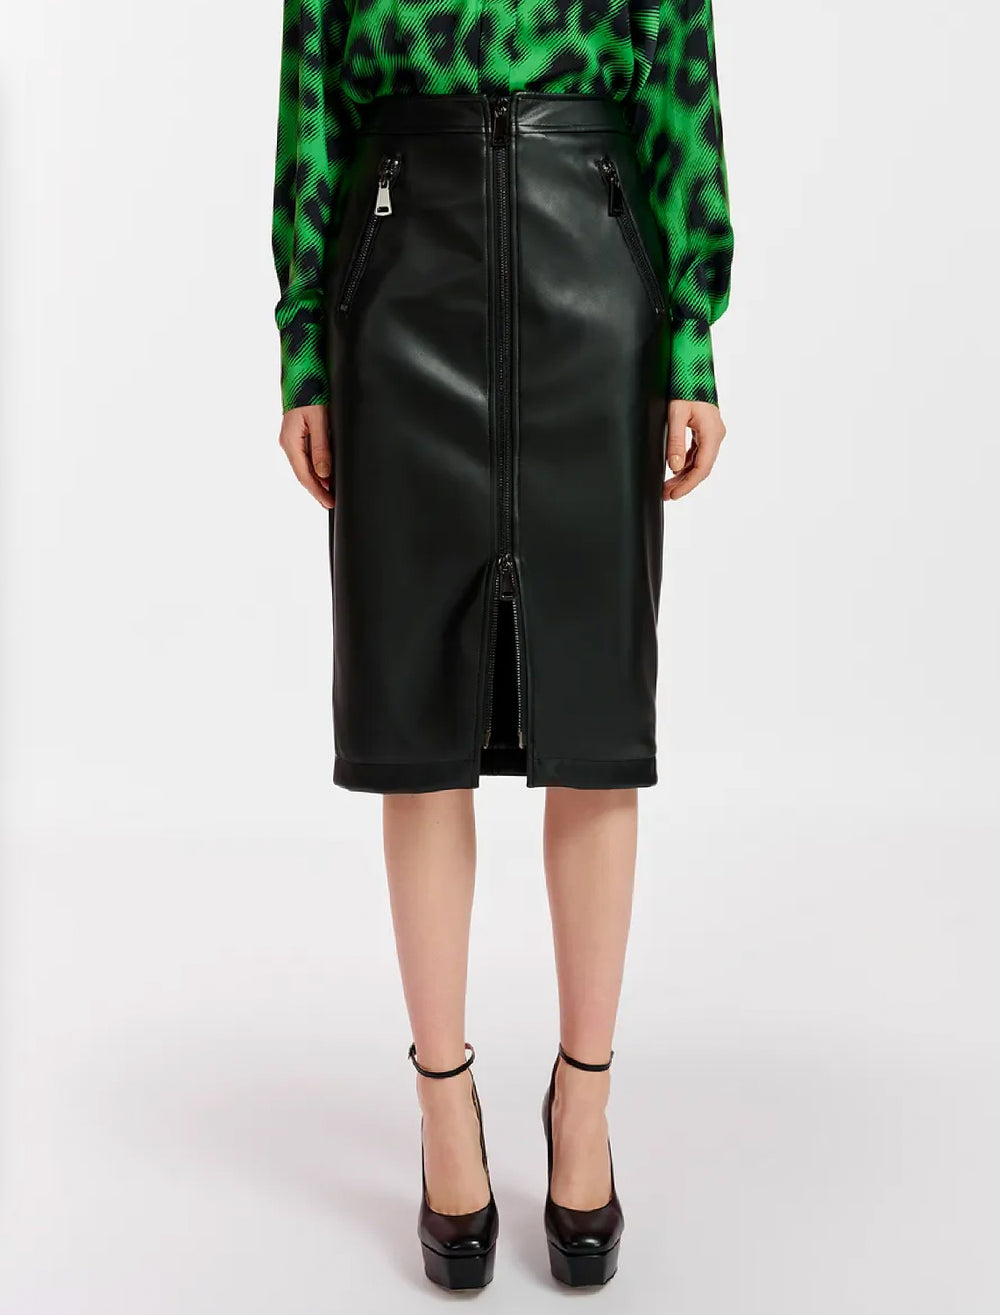 Model wearing Essentiel Antwerp's encourage faux leather skirt in black.